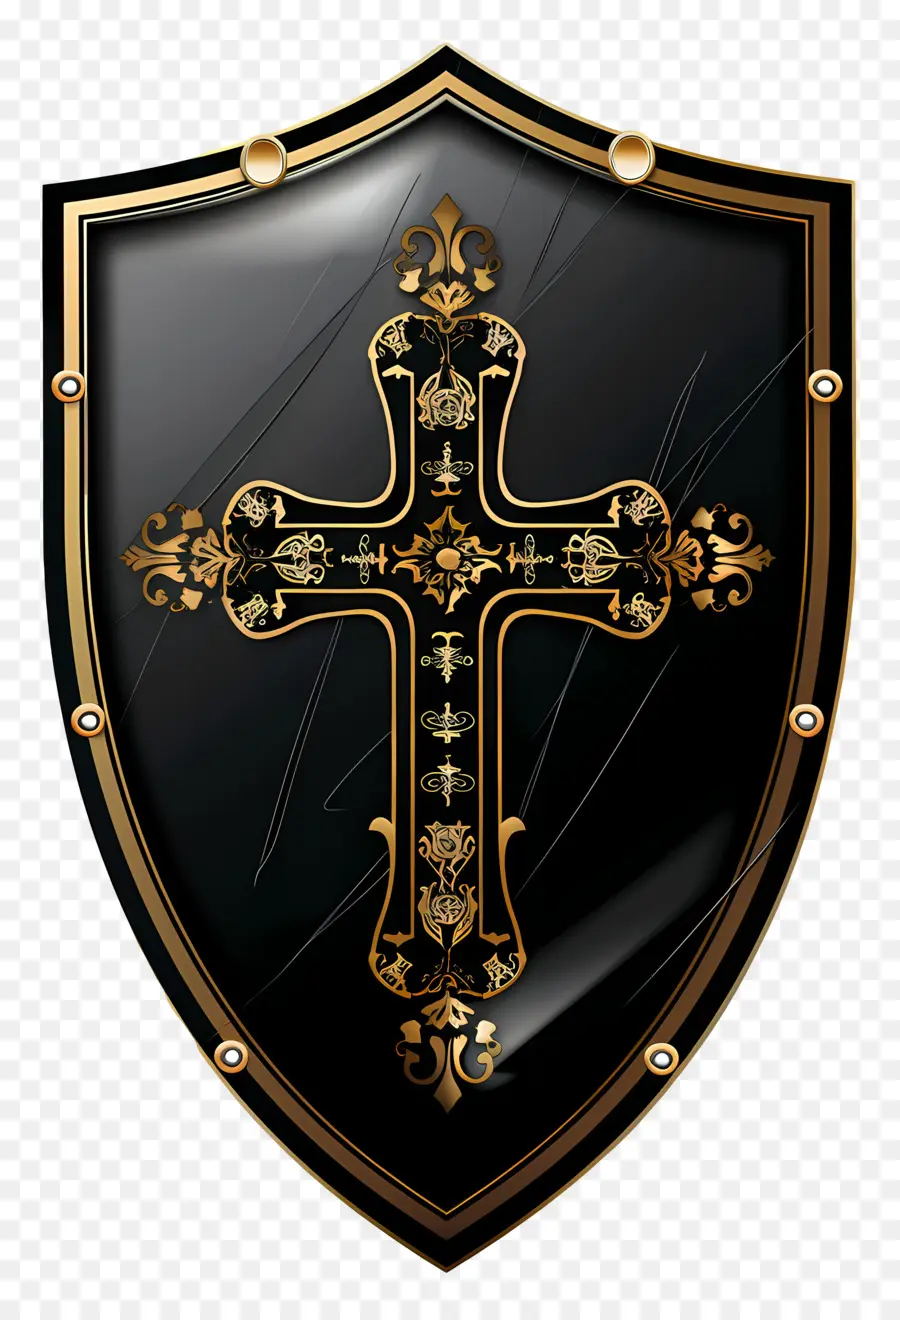 Schutzschildkreuz religiöser christliches Gold - Kompliziertes Schwarz- und Goldkreuzendesign